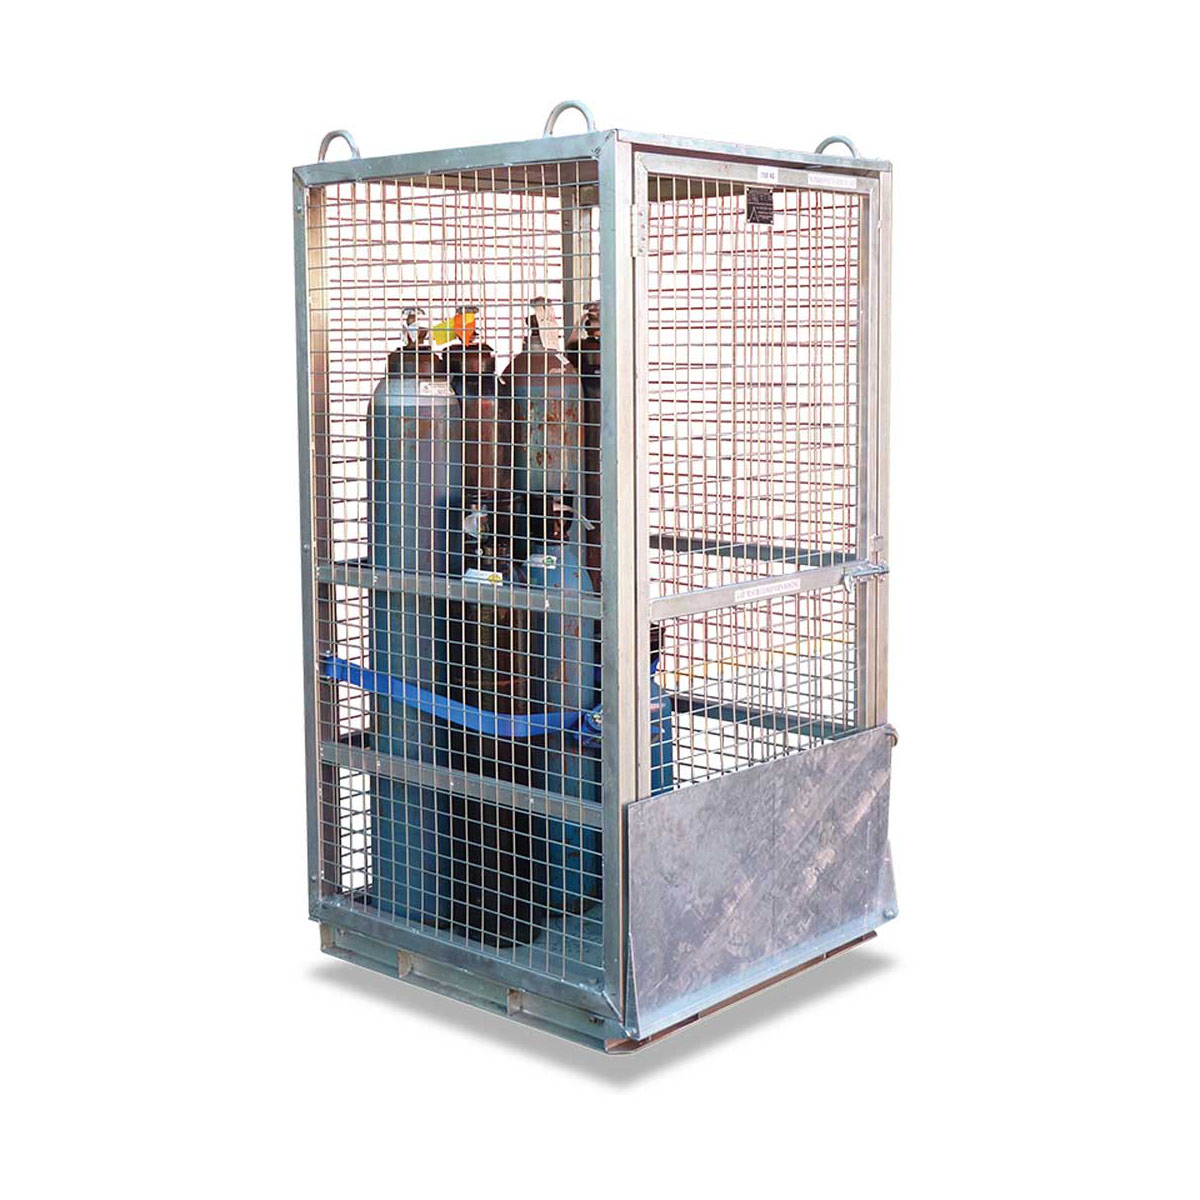 Buy Gas Cylinder Storage Cage in Storage / Stillage from Astrolift NZ